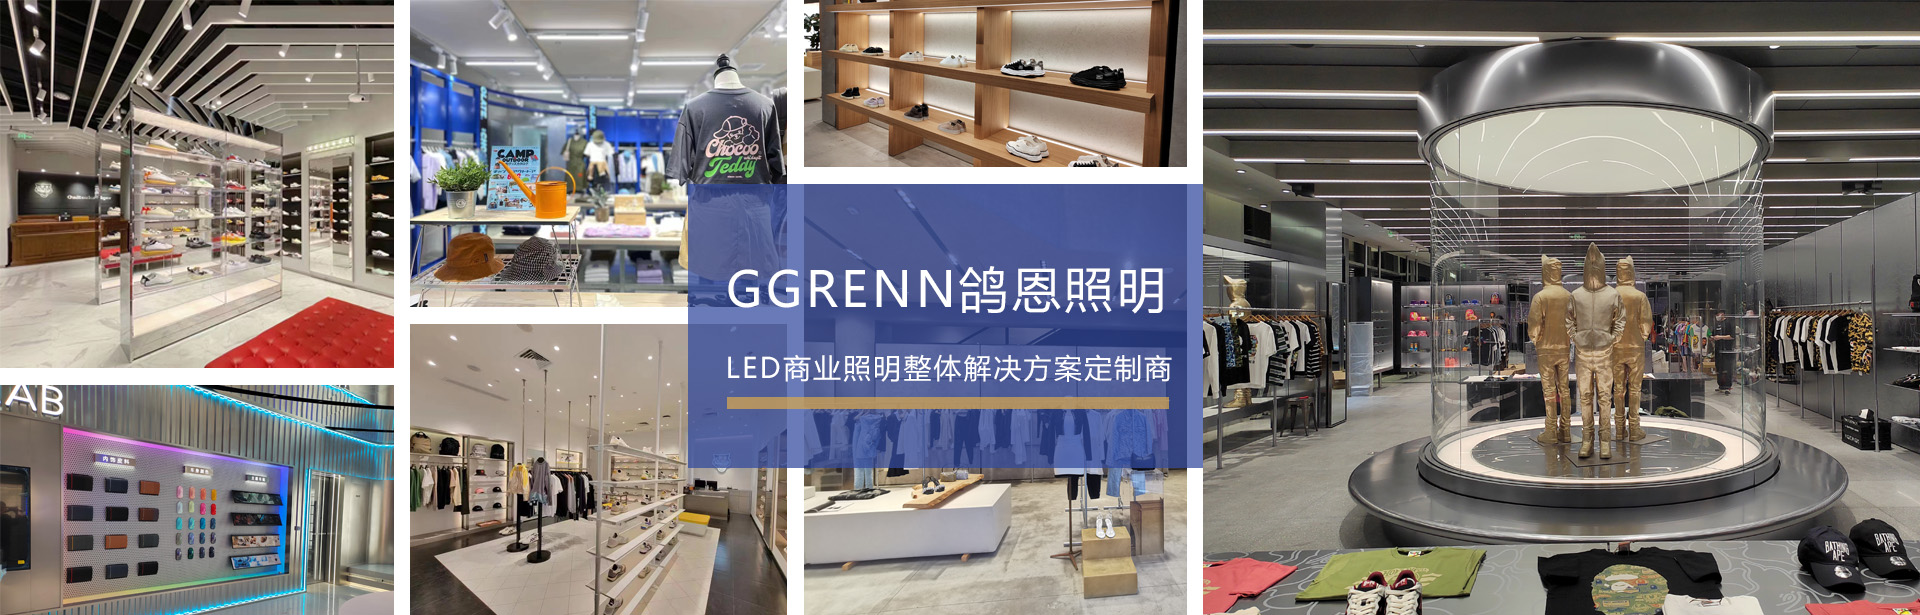 LED商业照明整体解决方案提供商